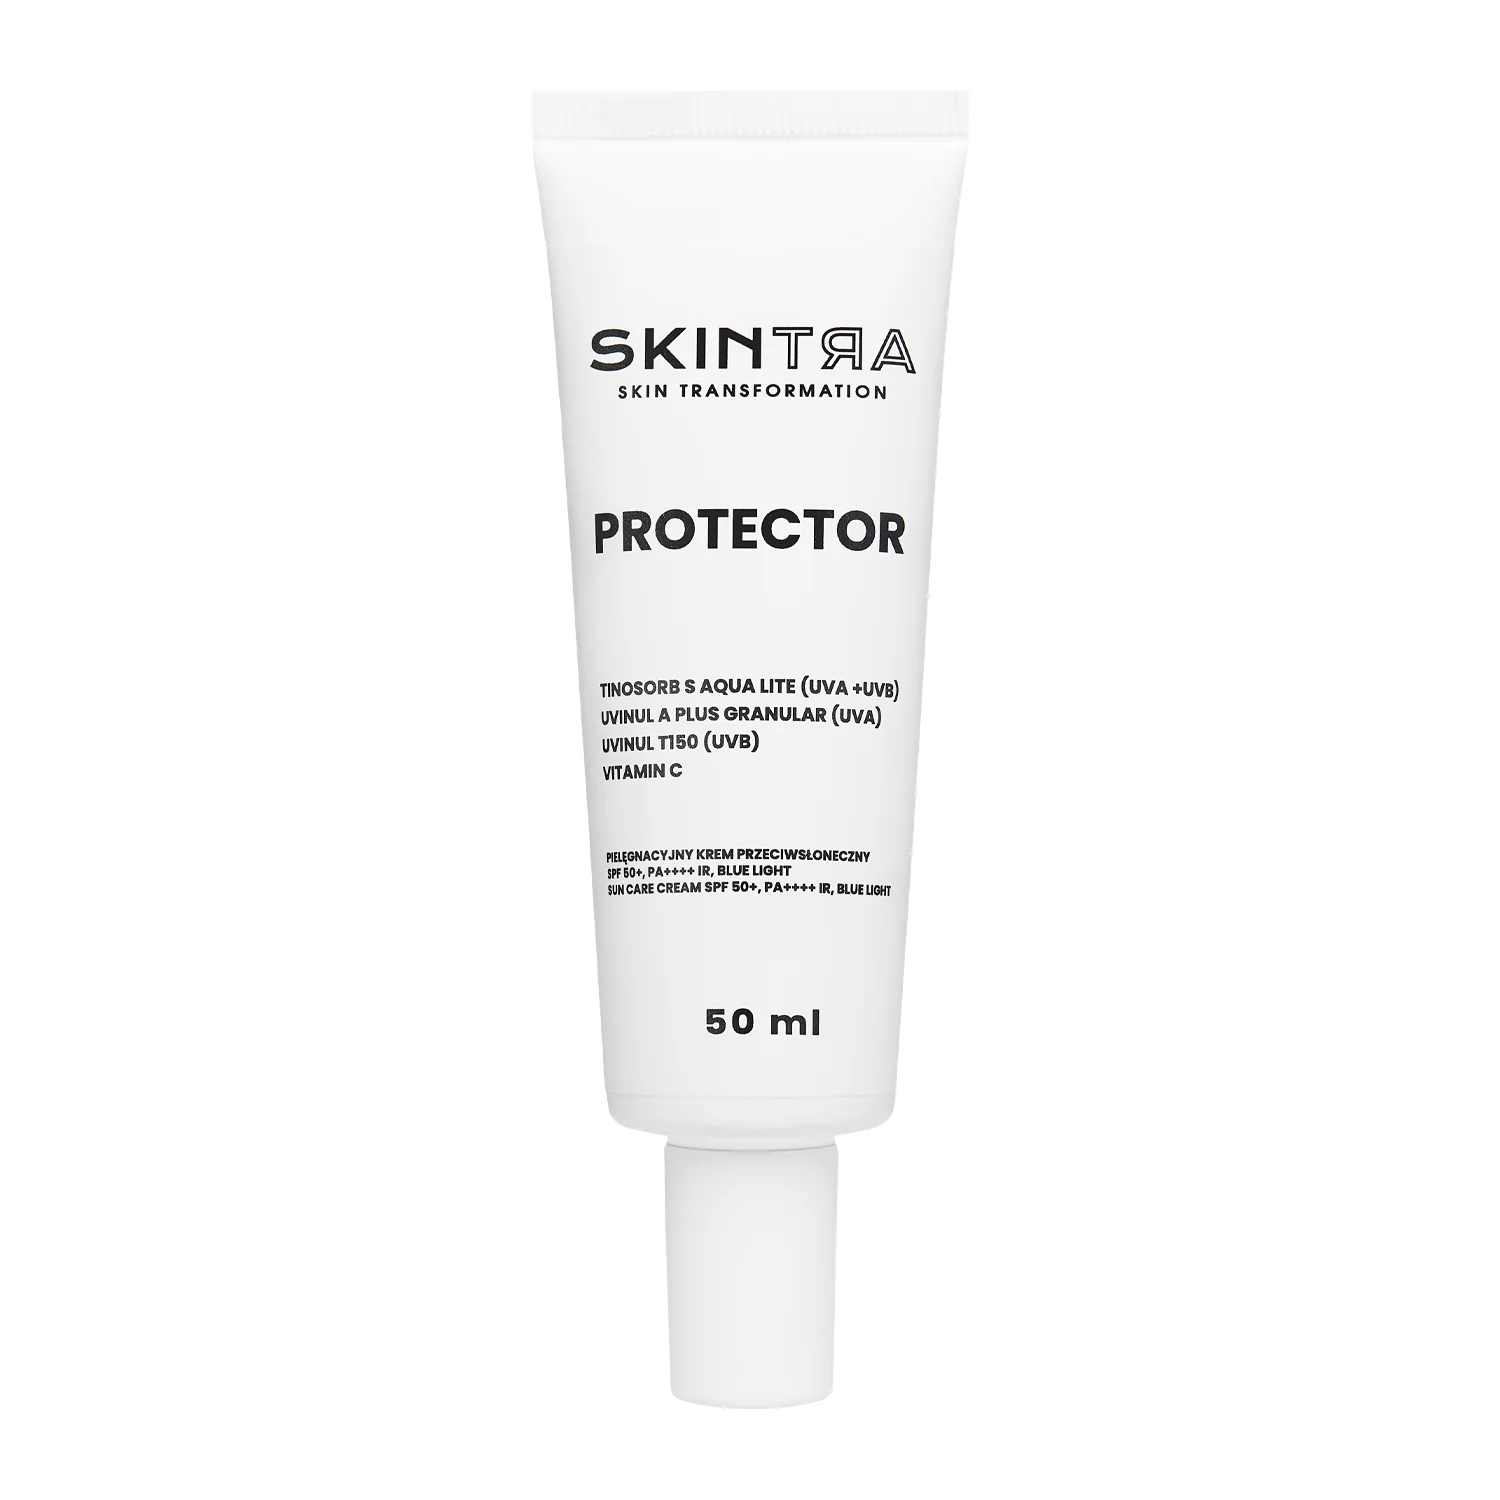 SkinTra - Protector - Nährende Sonnenschutzcreme SPF 50+/PA++++, IR, BLUE LIGHT - 50ml